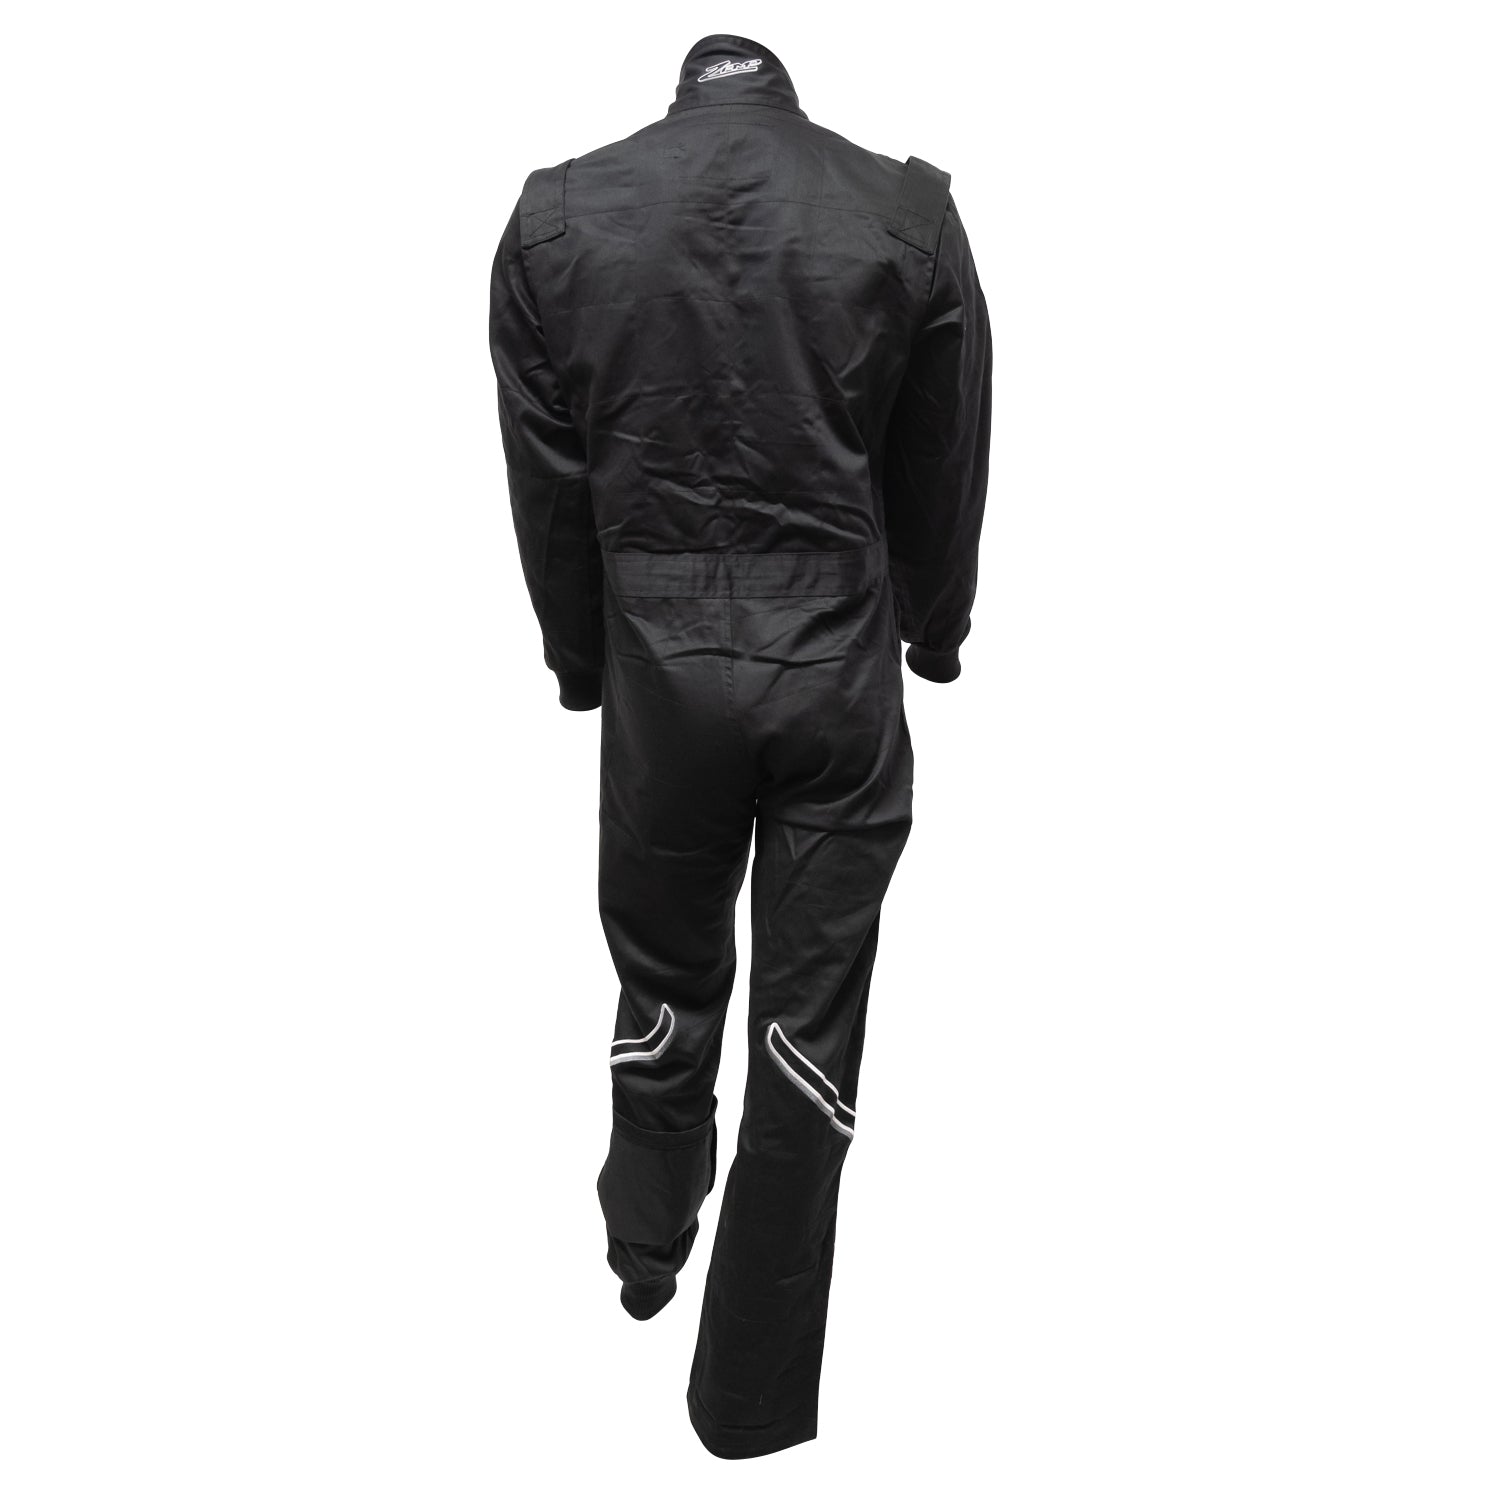 ZAMP Racing ZR-10 Race Suit Black Large R010003L